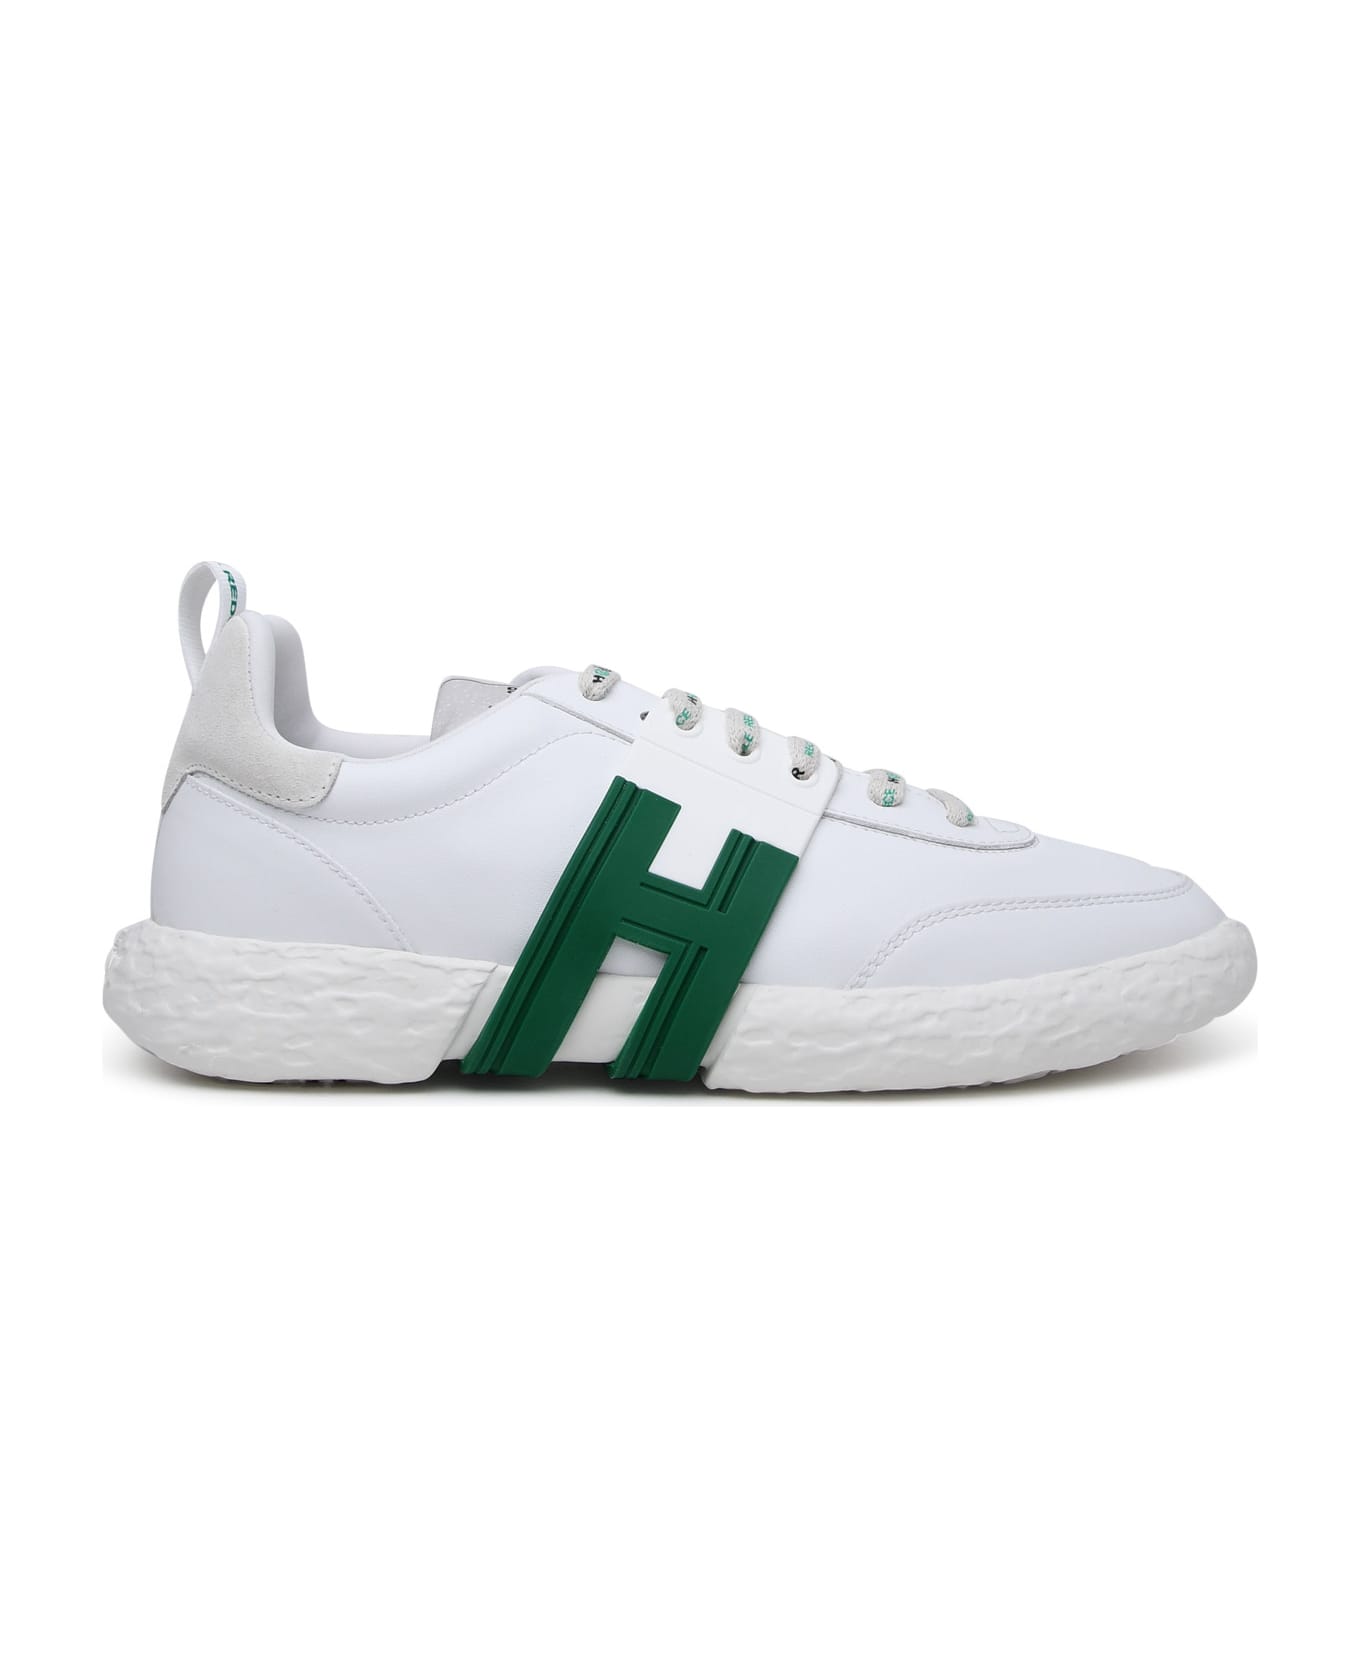 Hogan 3r Sneakers - White スニーカー